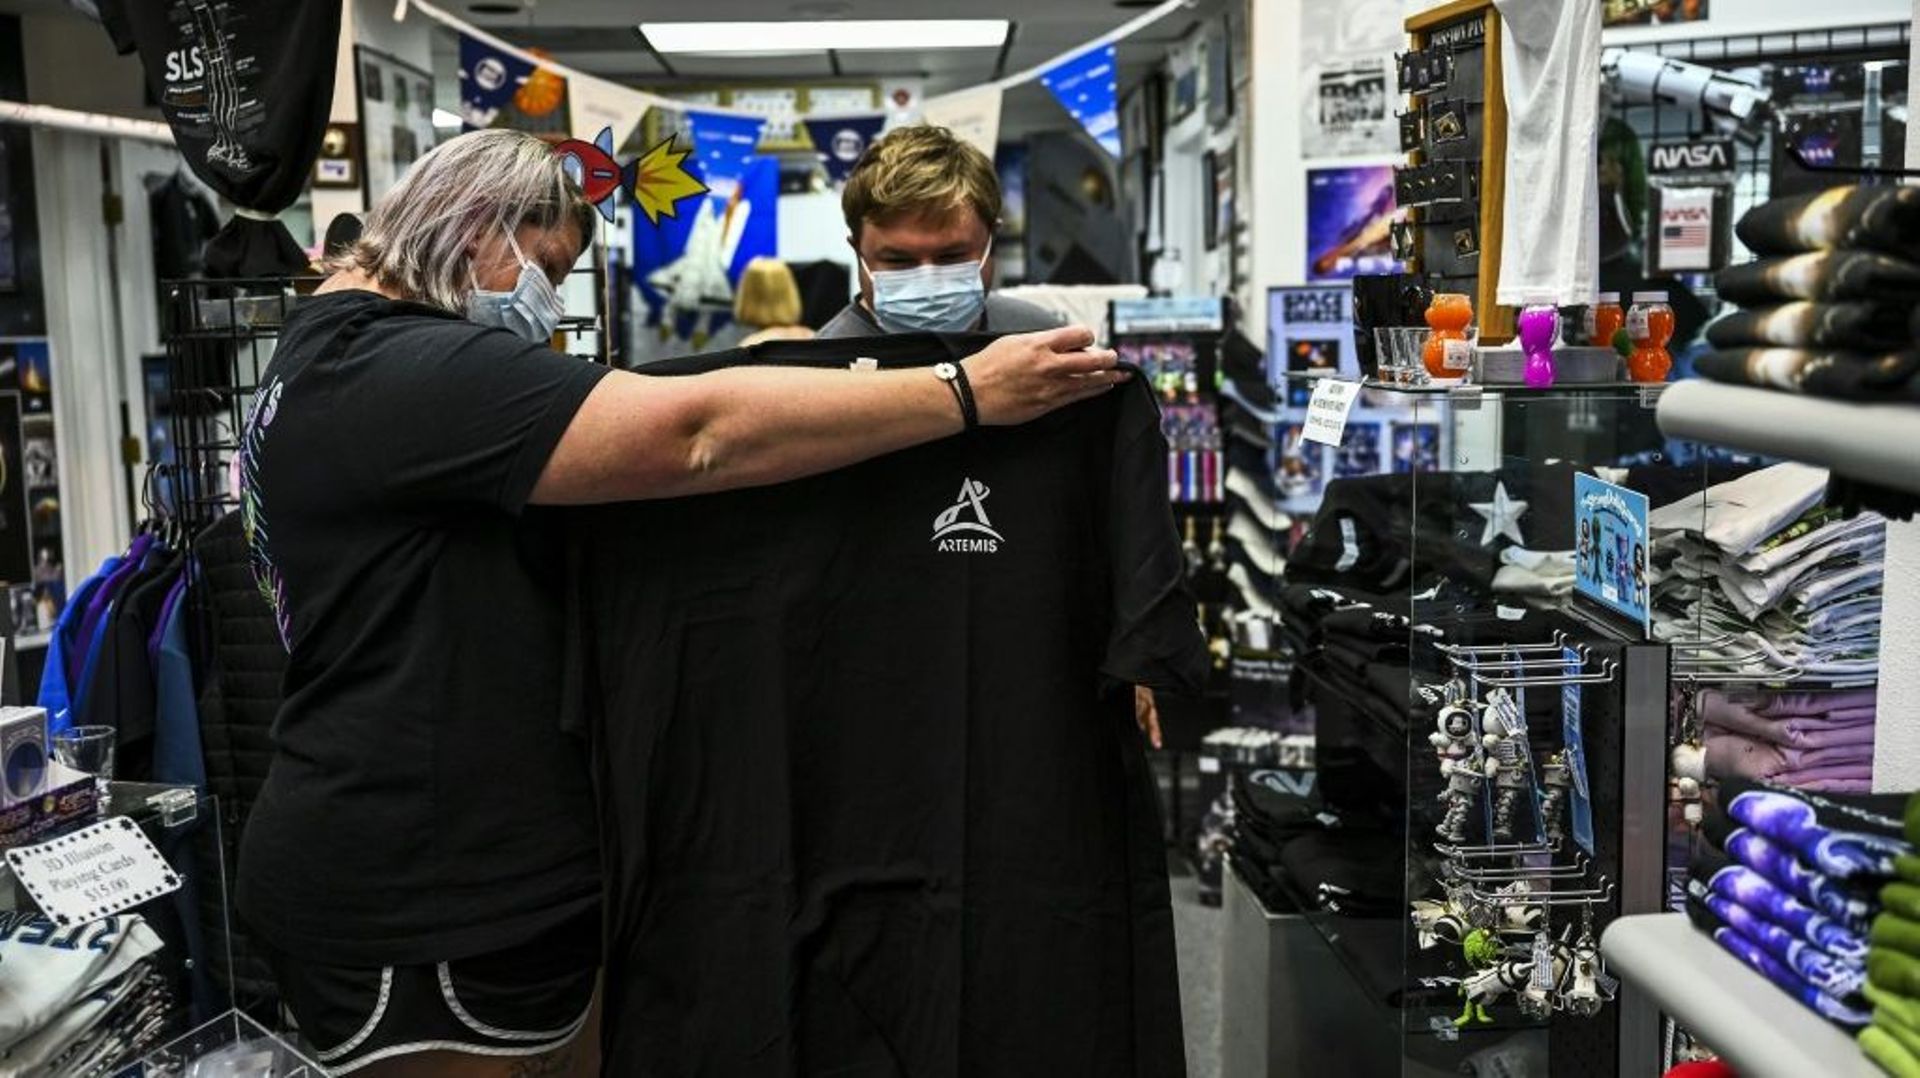 Des touristes dans un magasin dédié à l'espace près du centre spatial Kennedy en Floride, le 27 août 2022